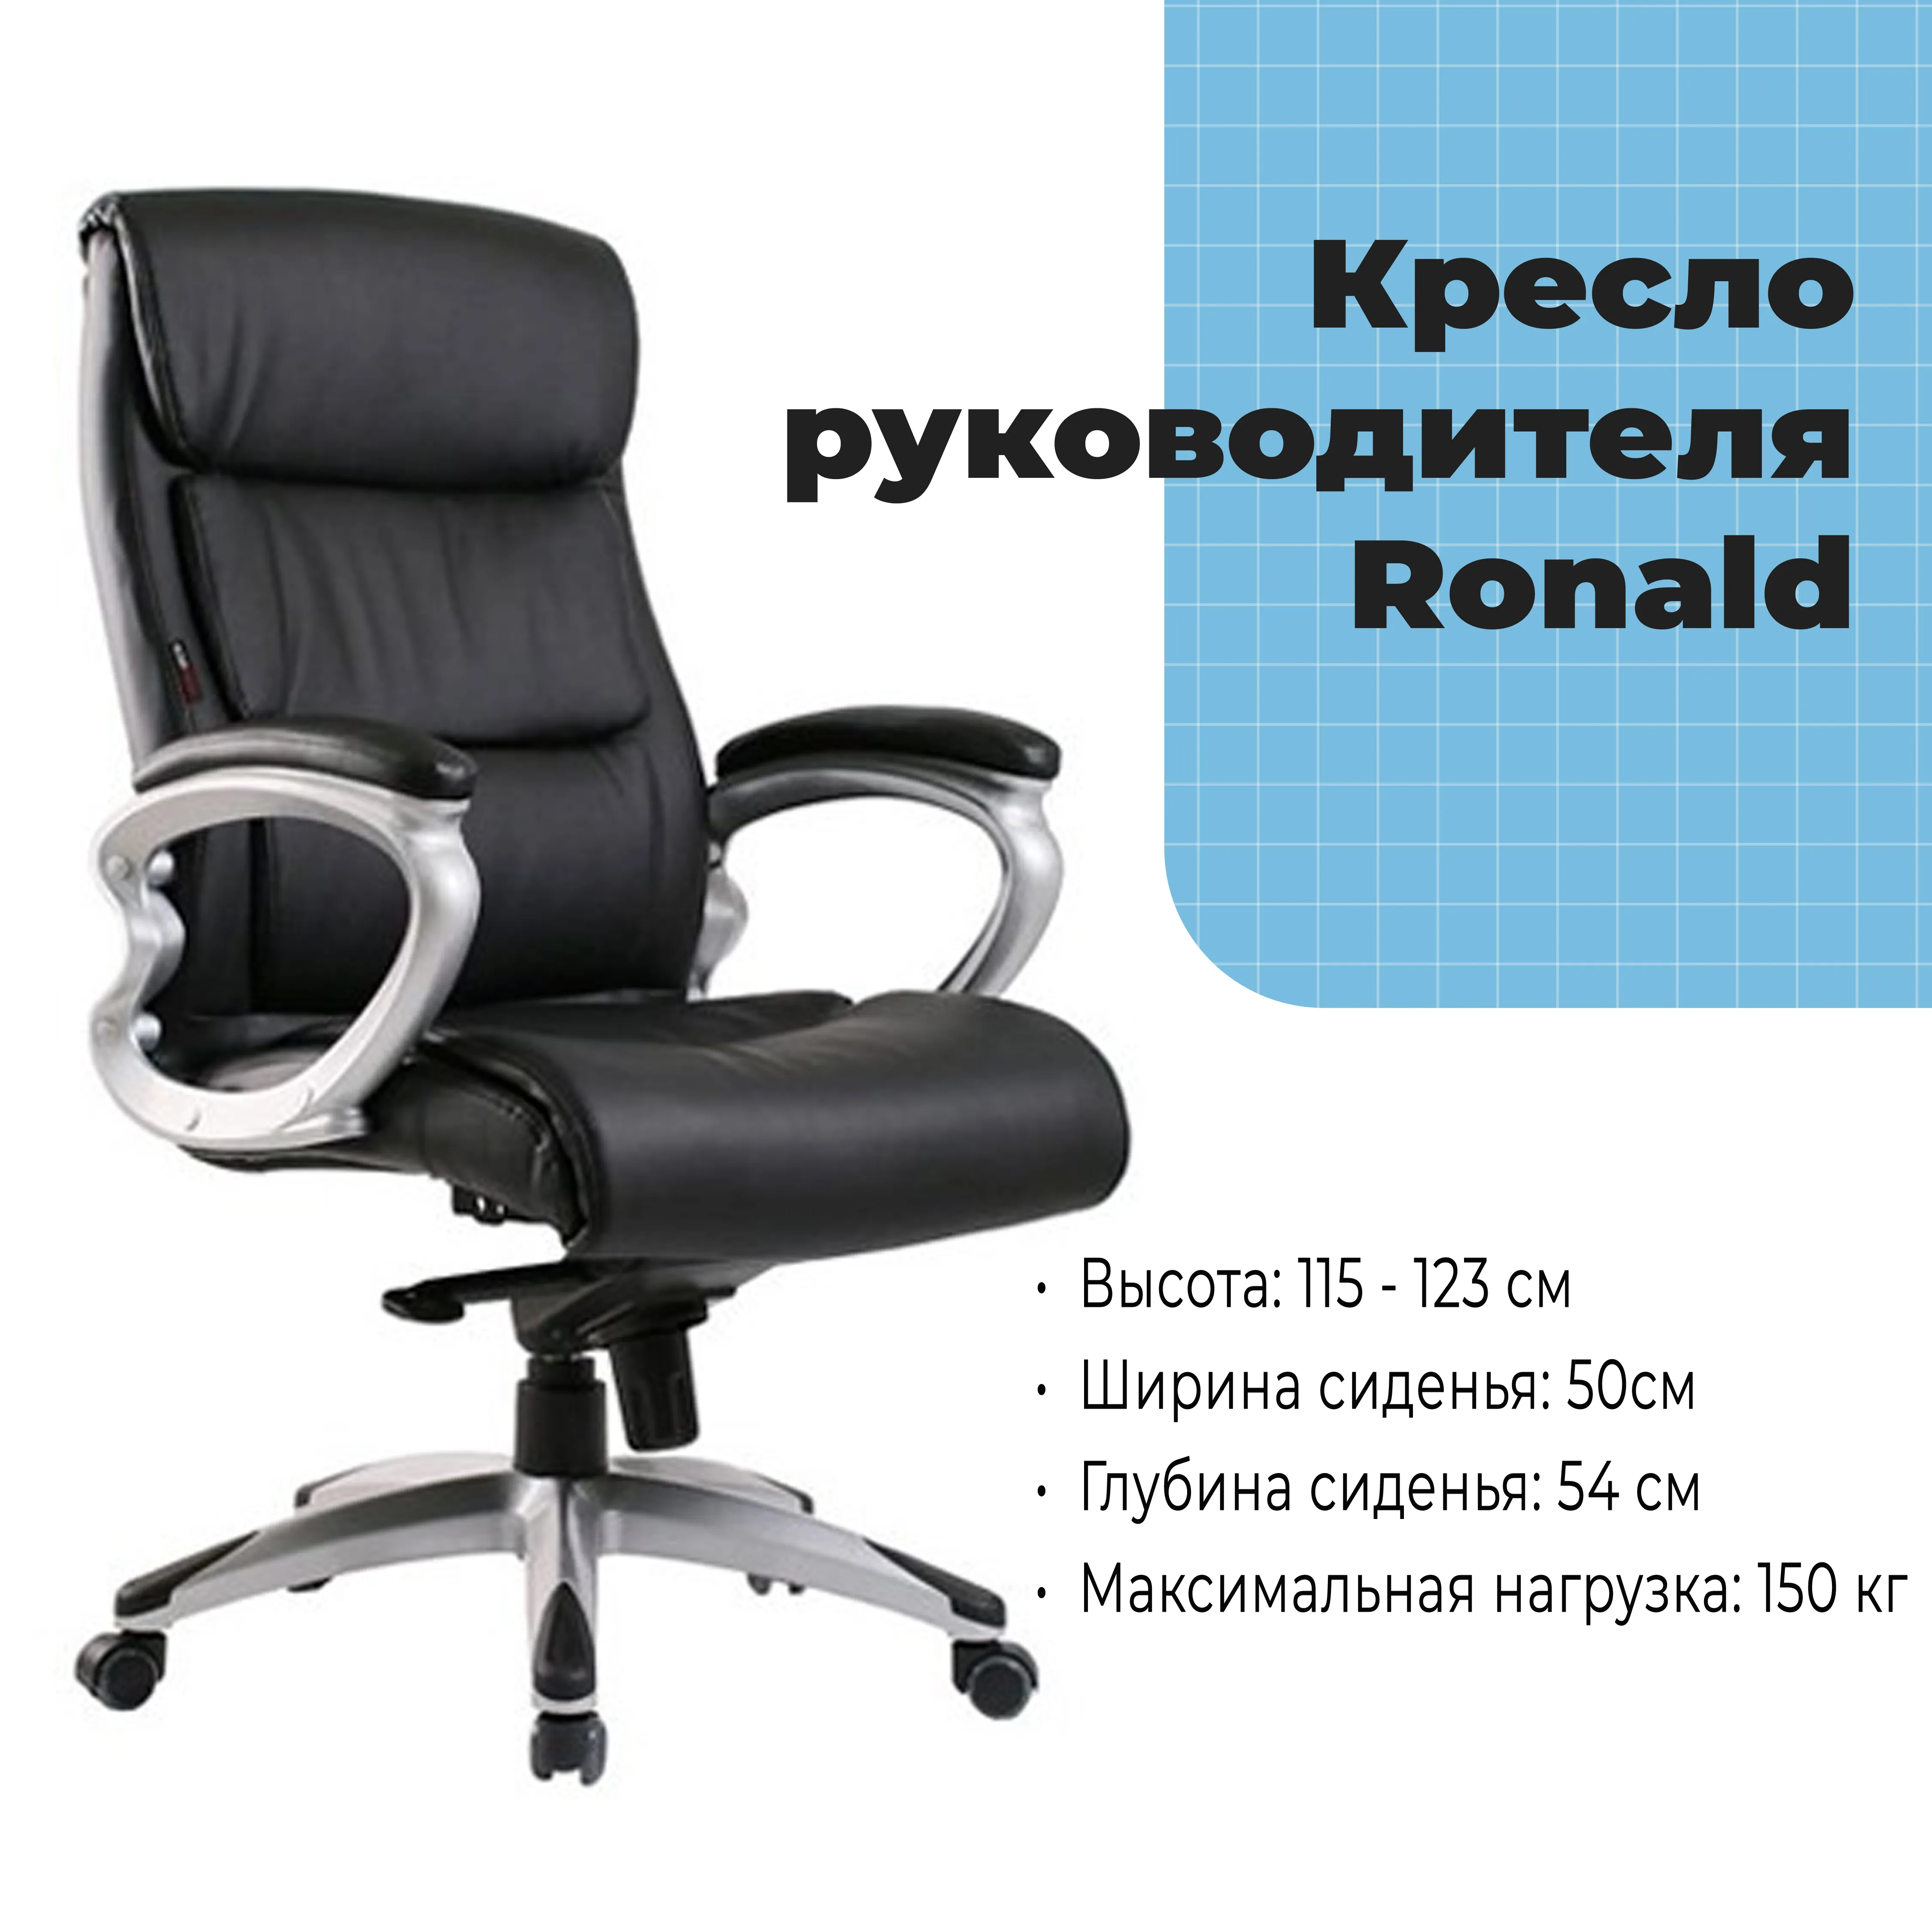 Кресло руководителя Ronald Black